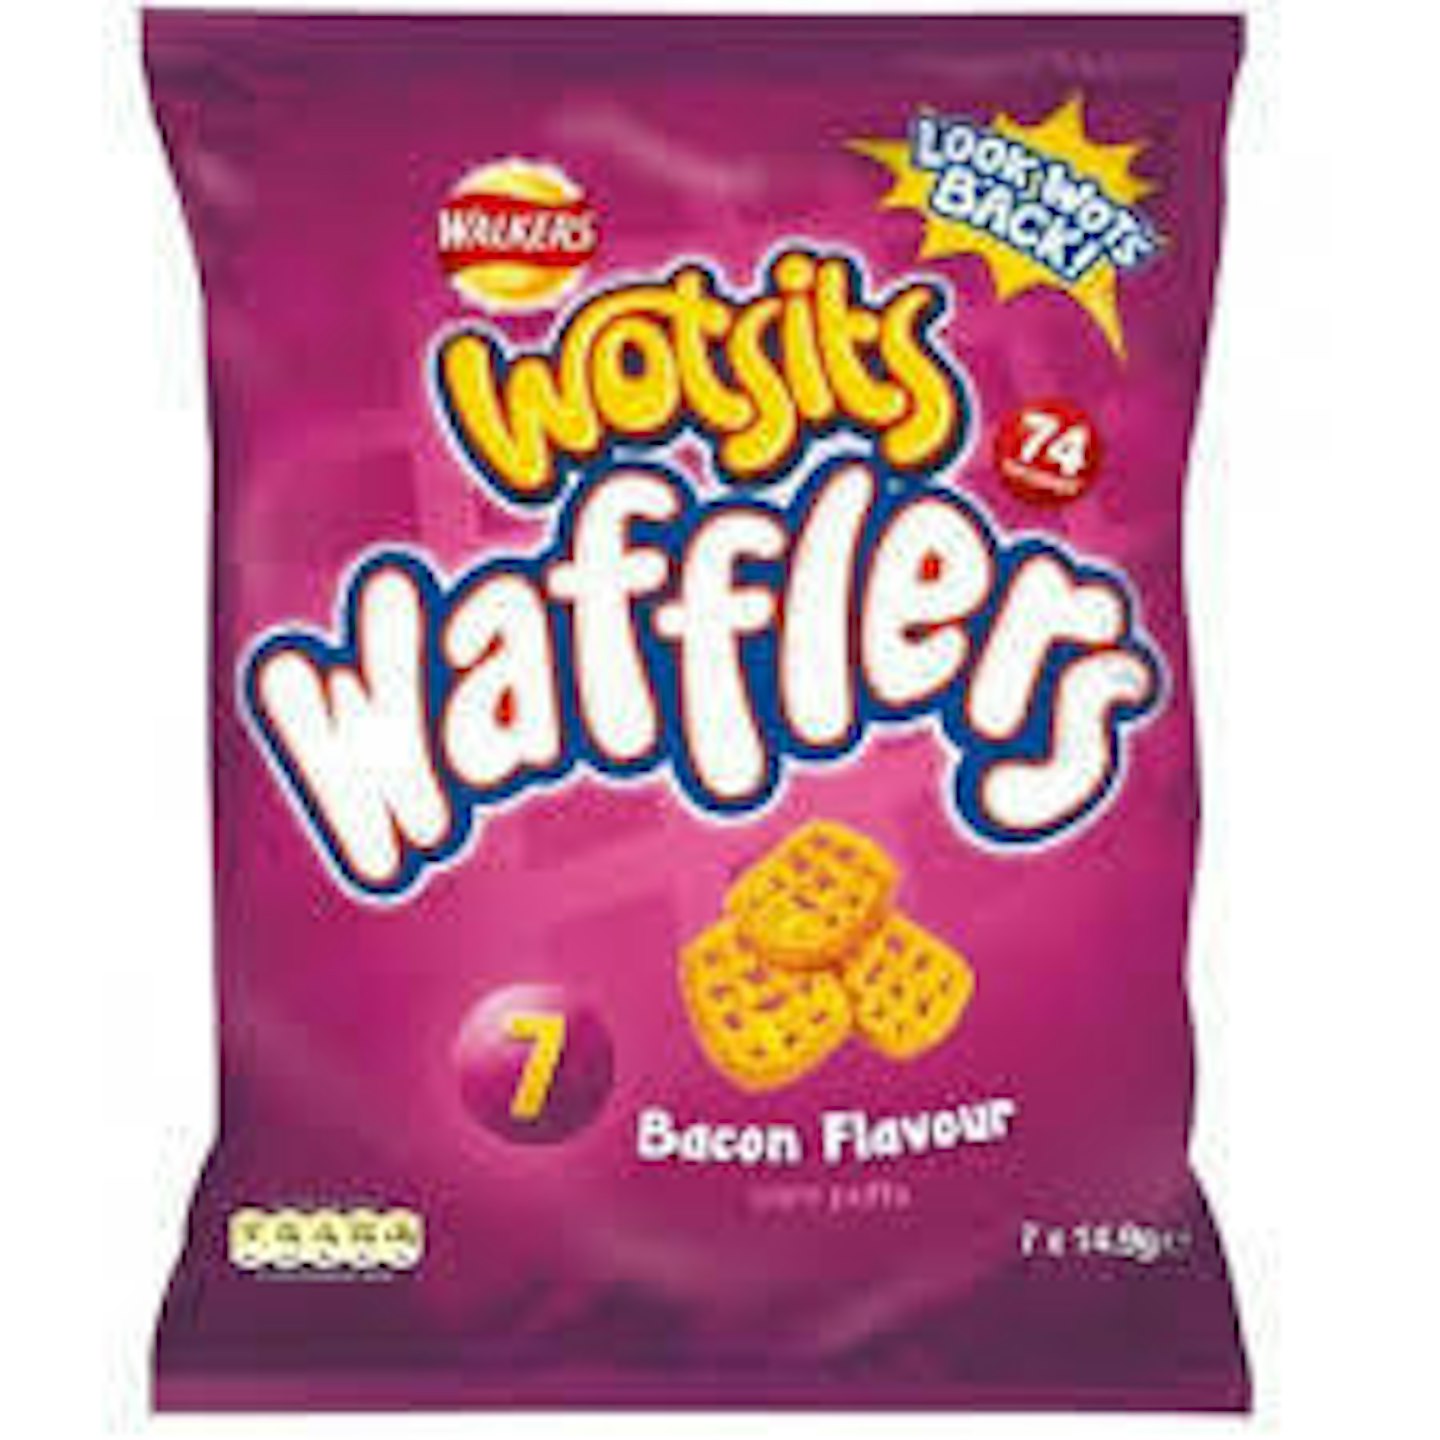 Discontinued crisps Wotsits Wafflers